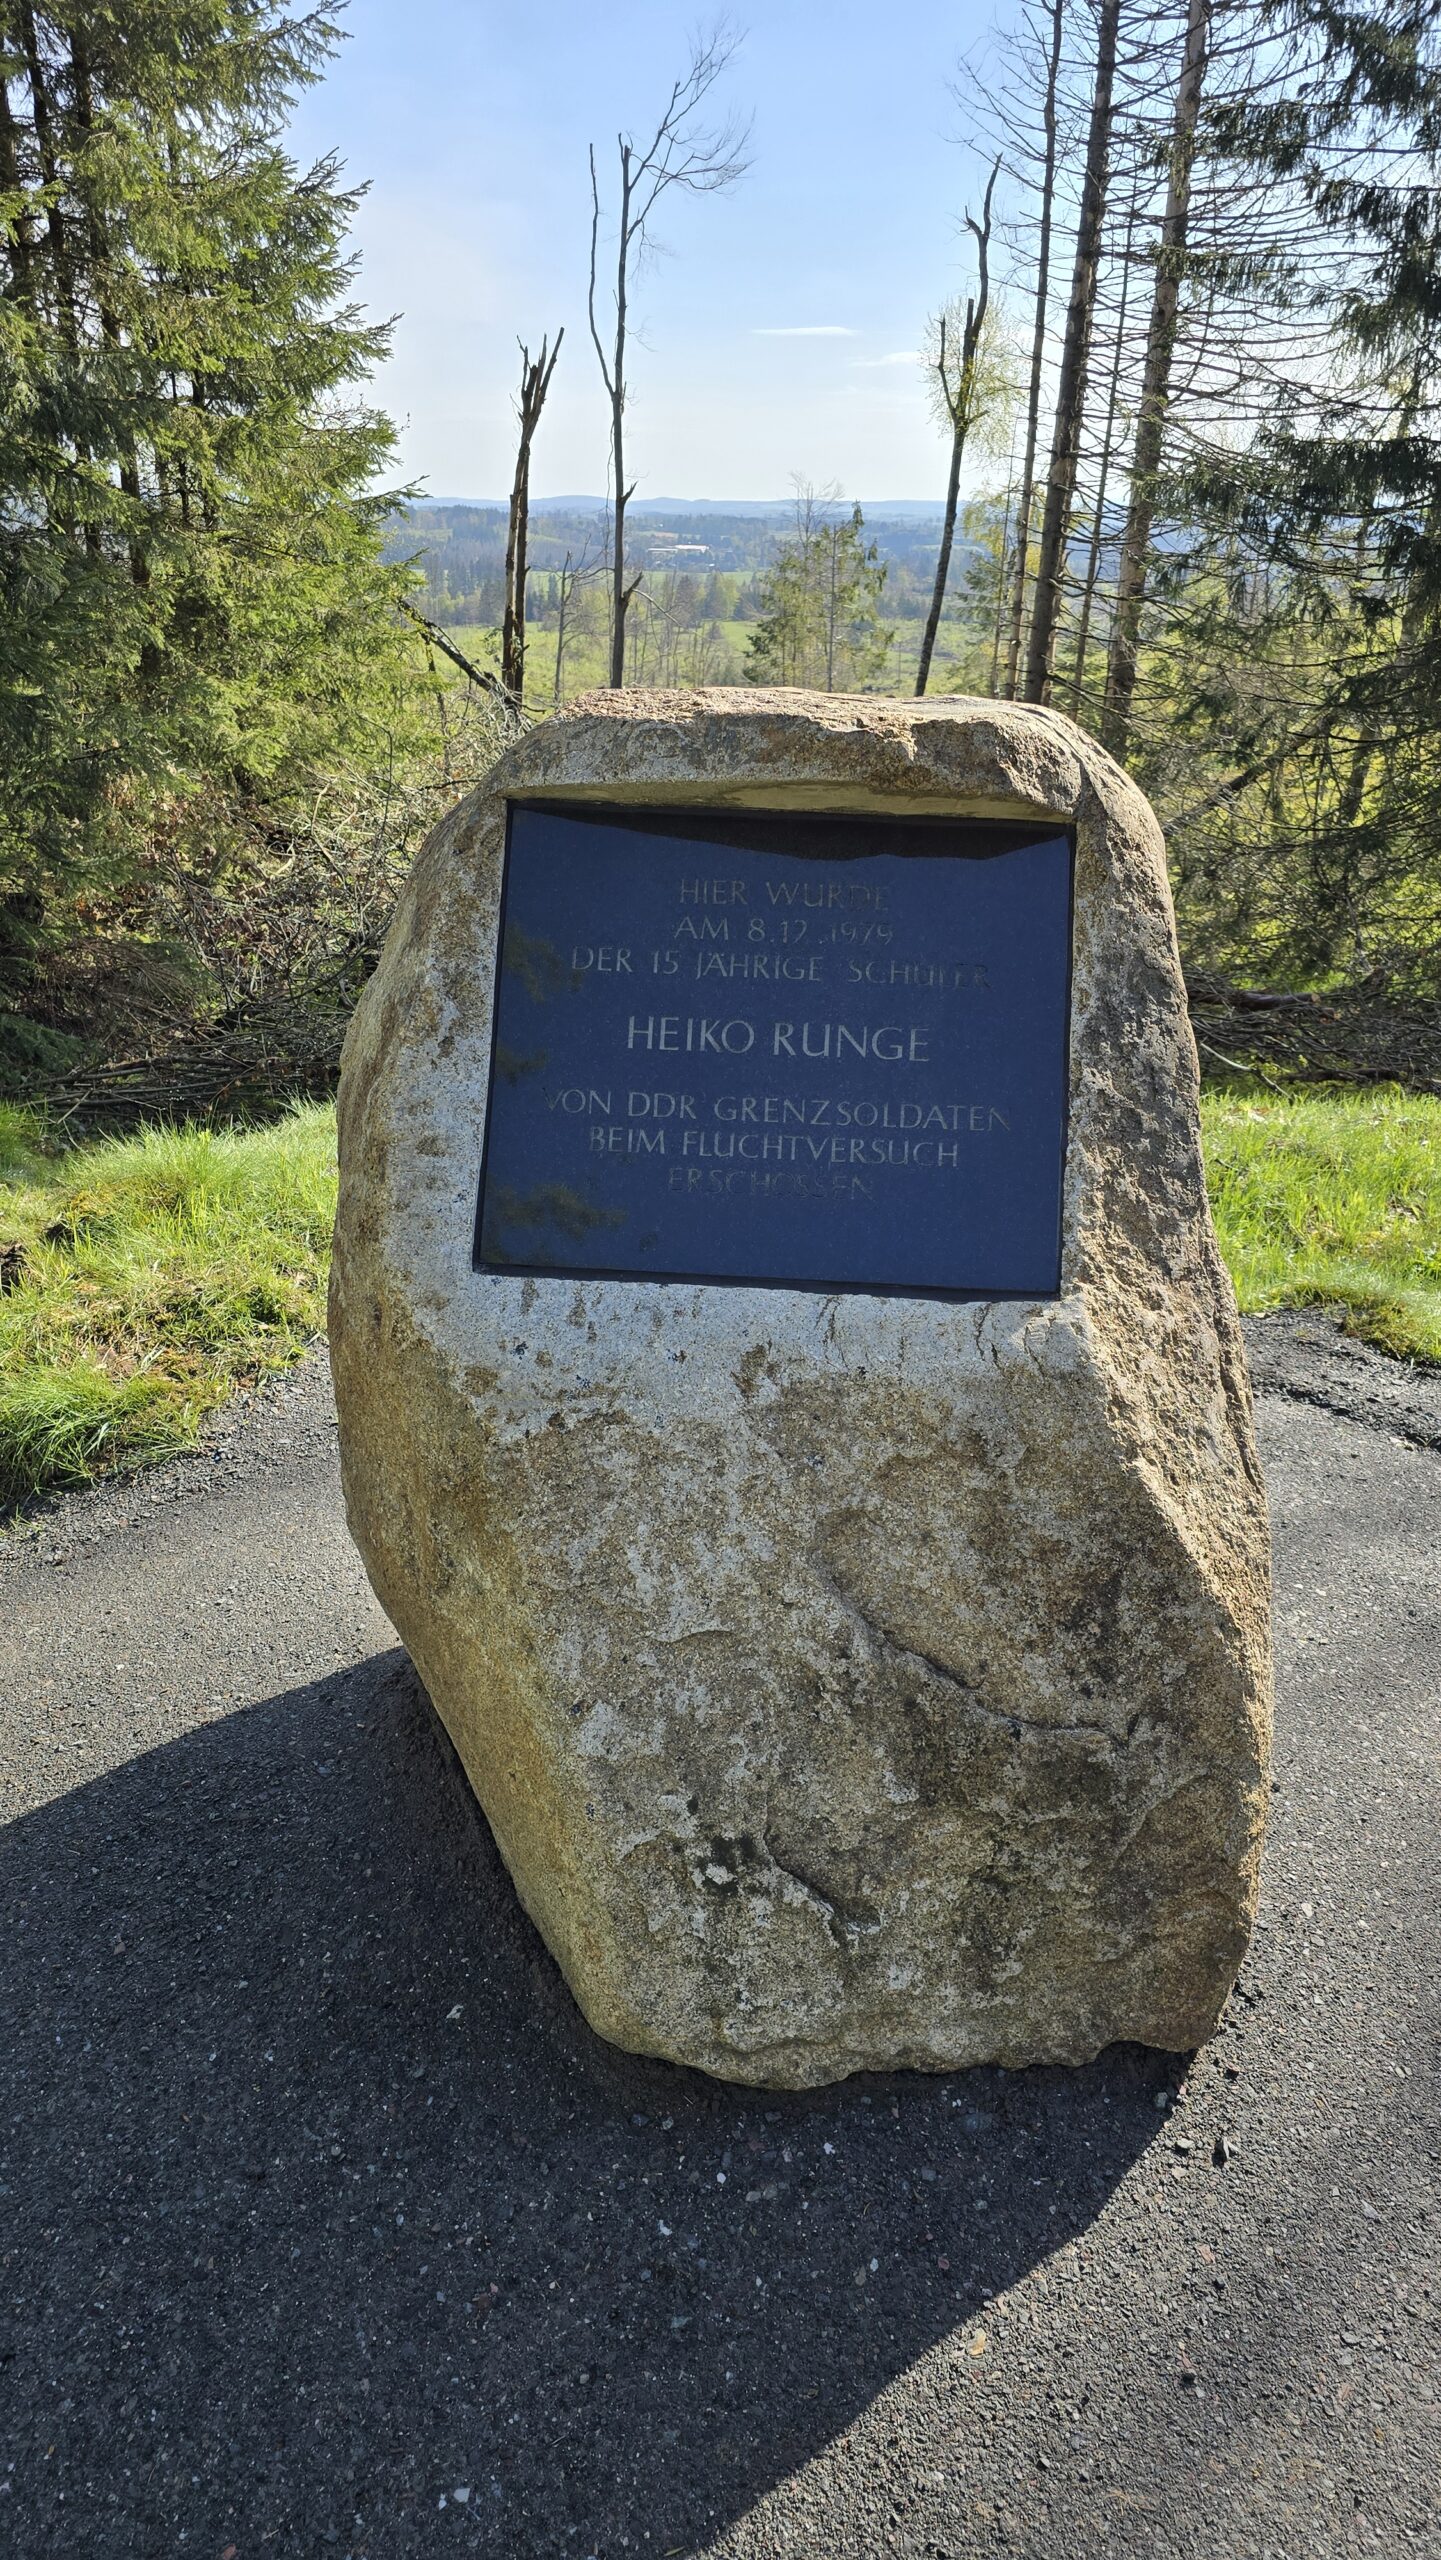 Frontale Ansicht des Gedenksteins für Heiko Runge. Im Hintergrund links und rechts Bäume. Direkt hinter dem Stein bietet sich ein weiter Blick über Felder und Wald.